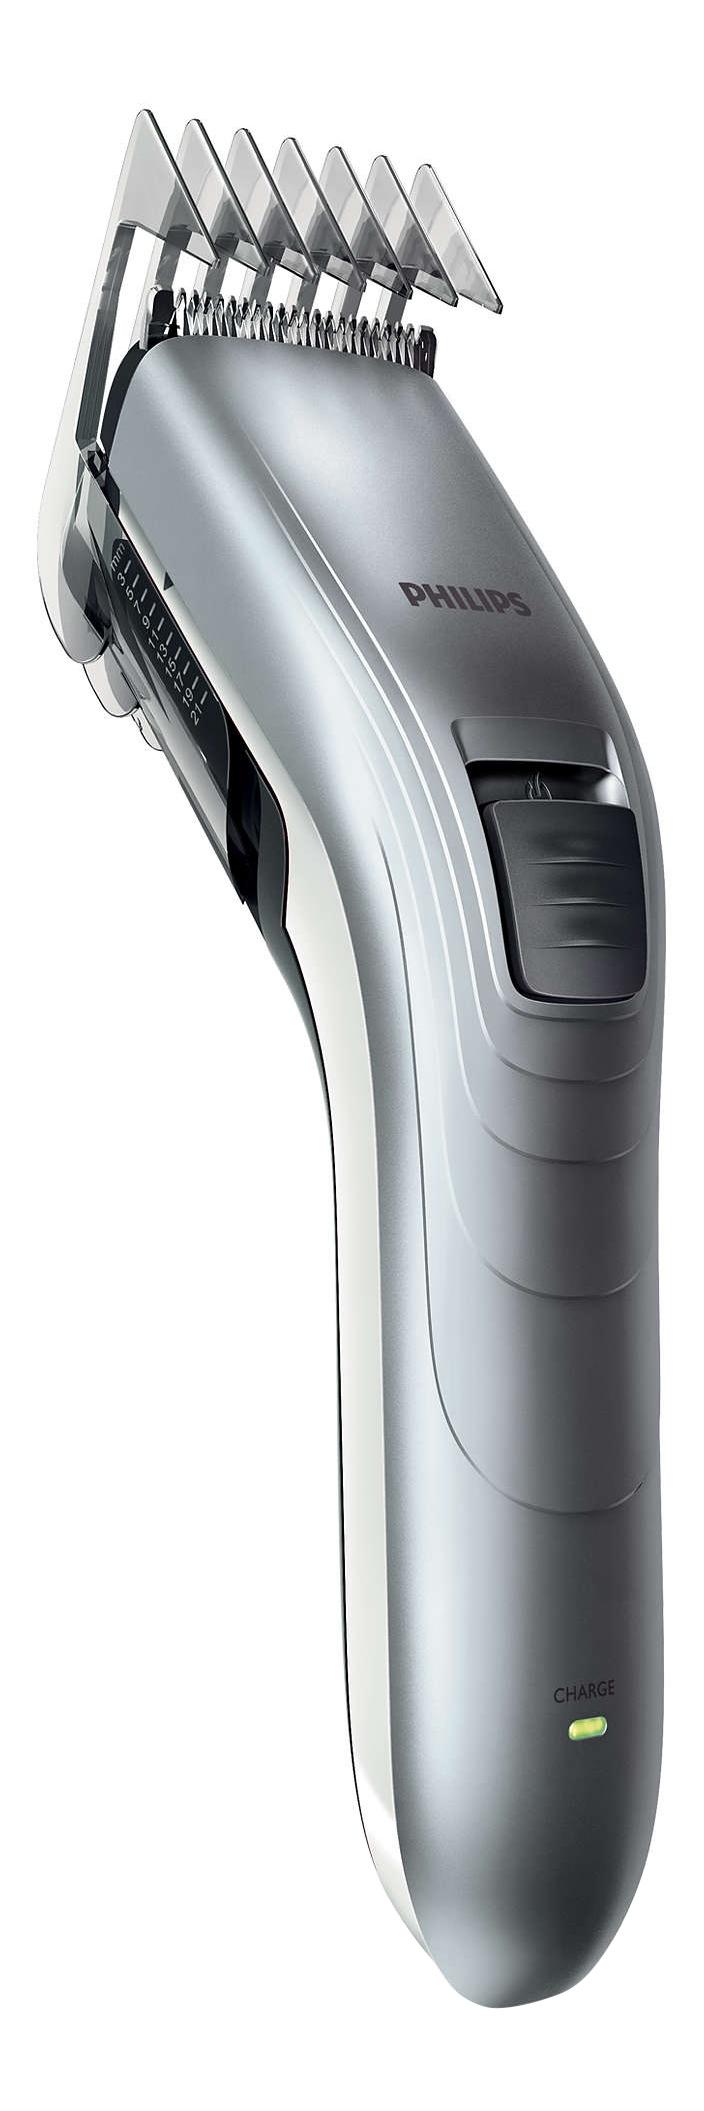 Машинка для стрижки волос Philips Series 3000 QC5130/ 15 машинка для стрижки волос philips nt3650 16